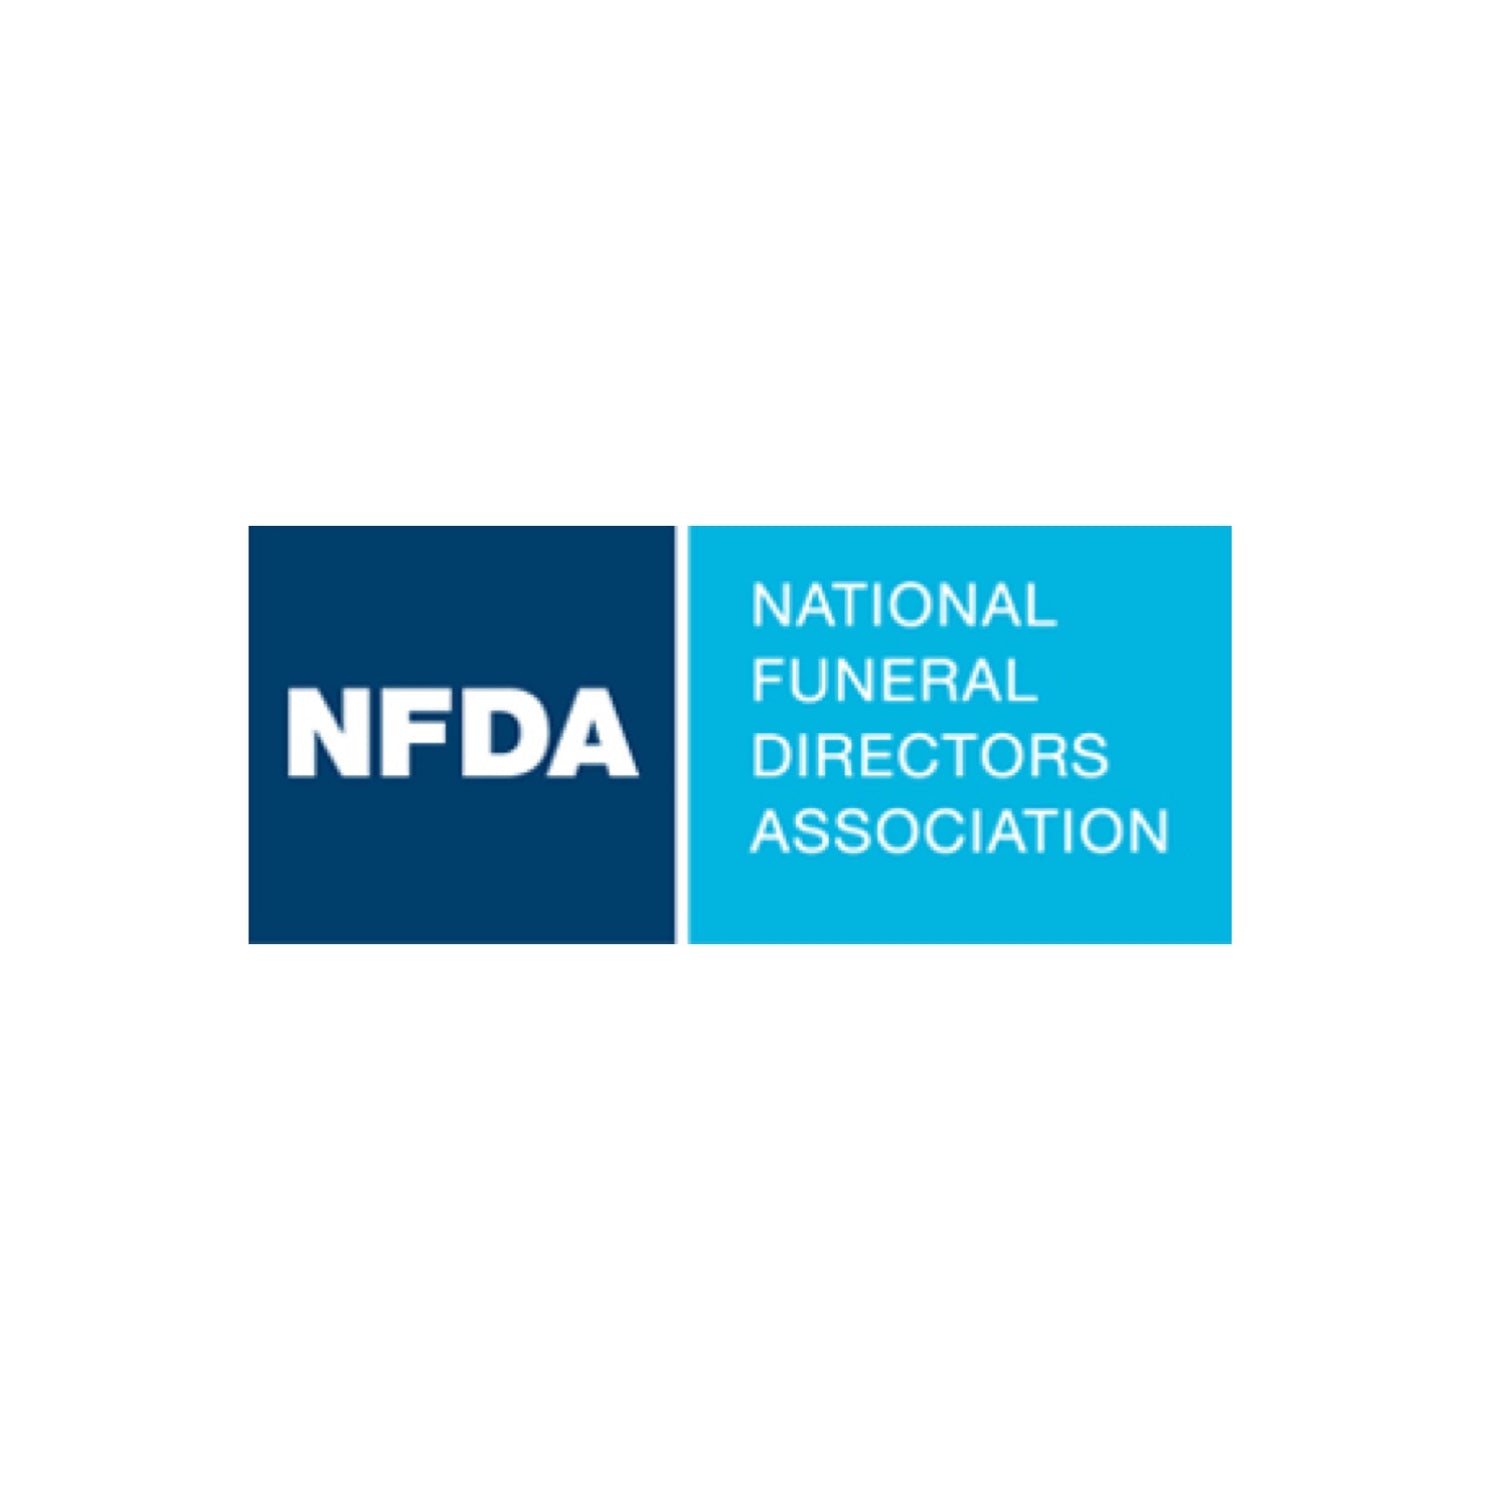 NFDA National Funeral Directors Association